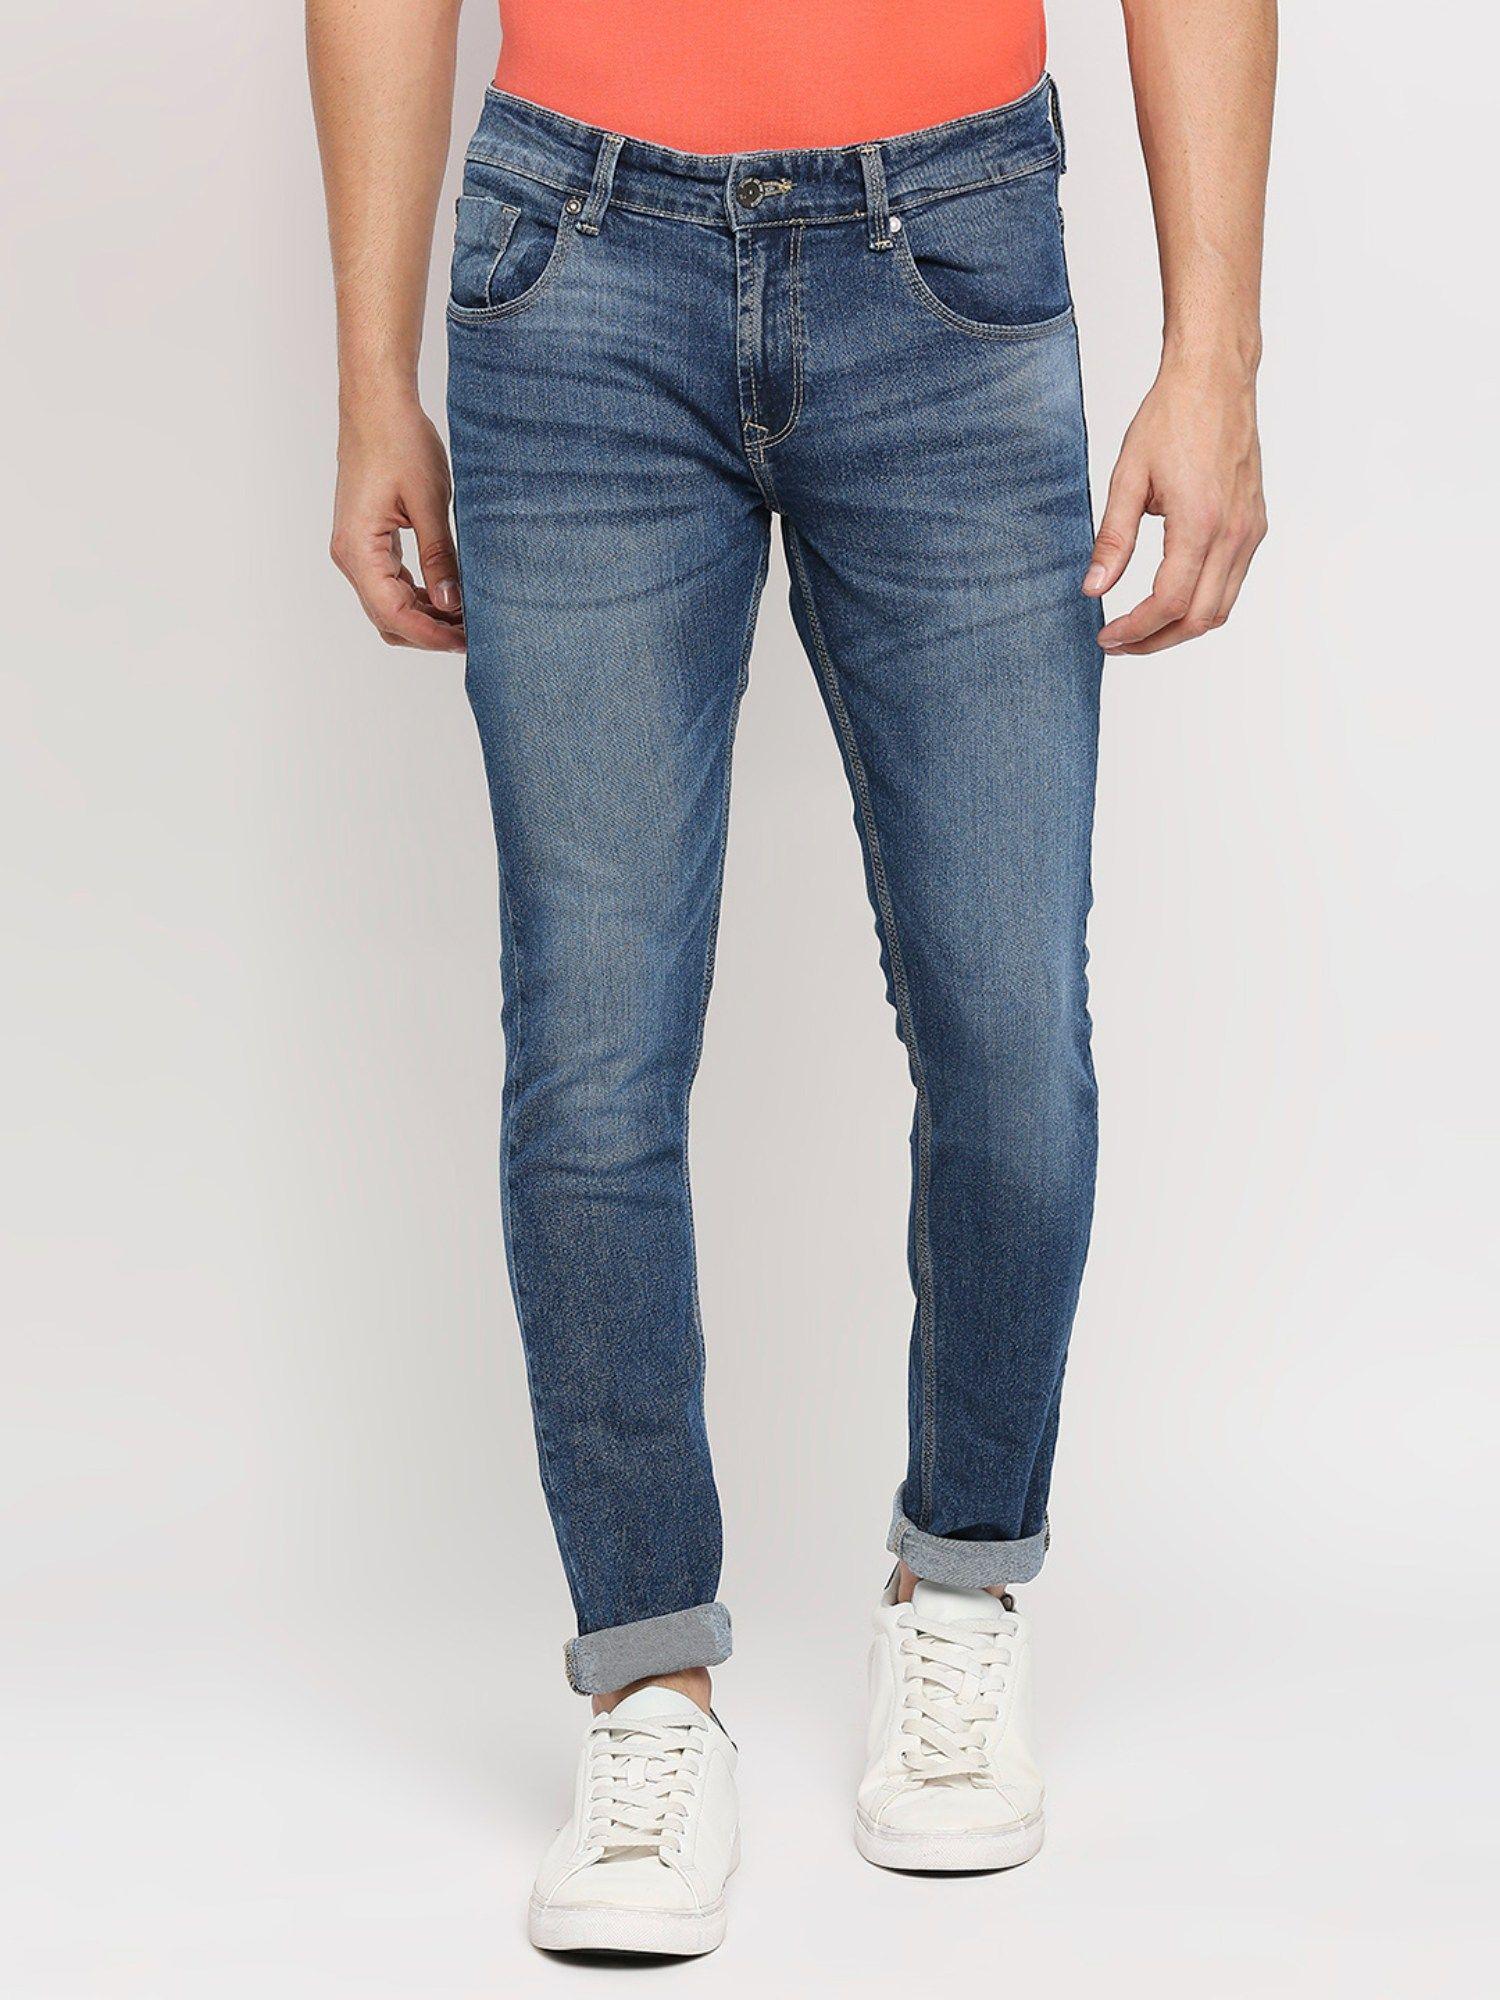 blue-super-slim-fit-ankle-length-jeans-for-men